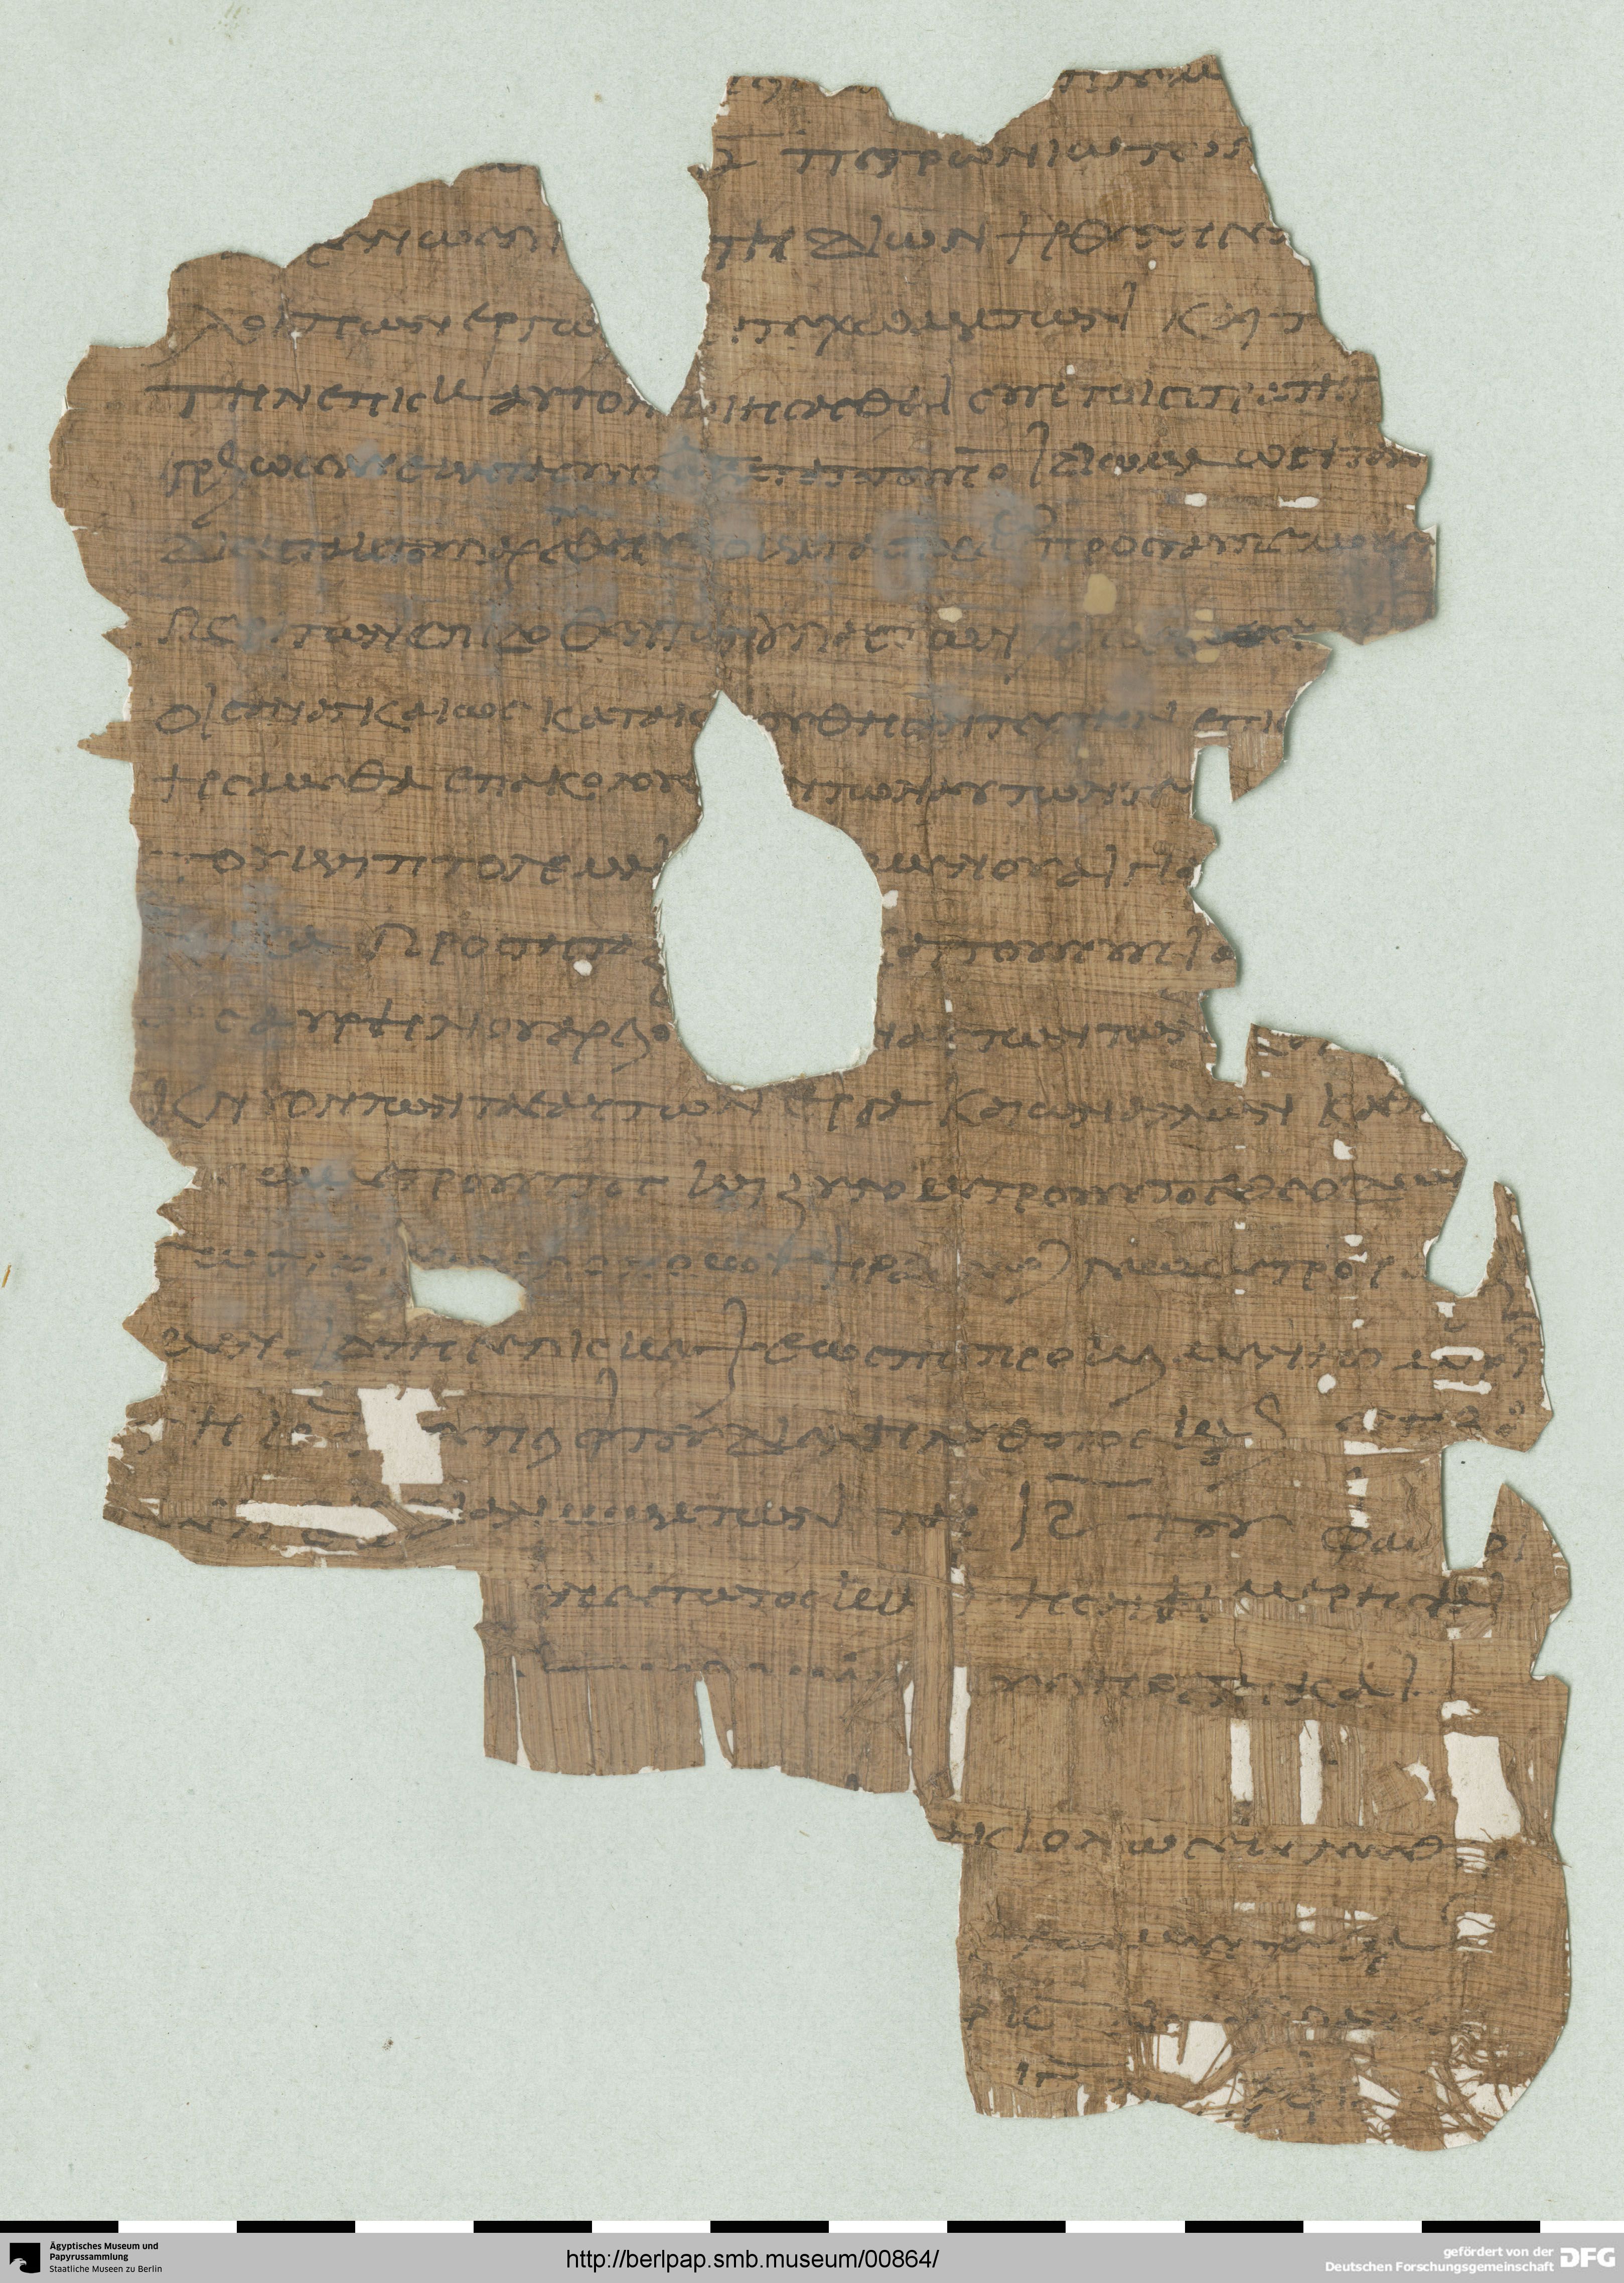 https://berlpap.smb.museum/Original/P_01512-Fr-a_R_2_001.jpg (Ägyptisches Museum und Papyrussammlung, Staatliche Museen zu Berlin CC BY-NC-SA)